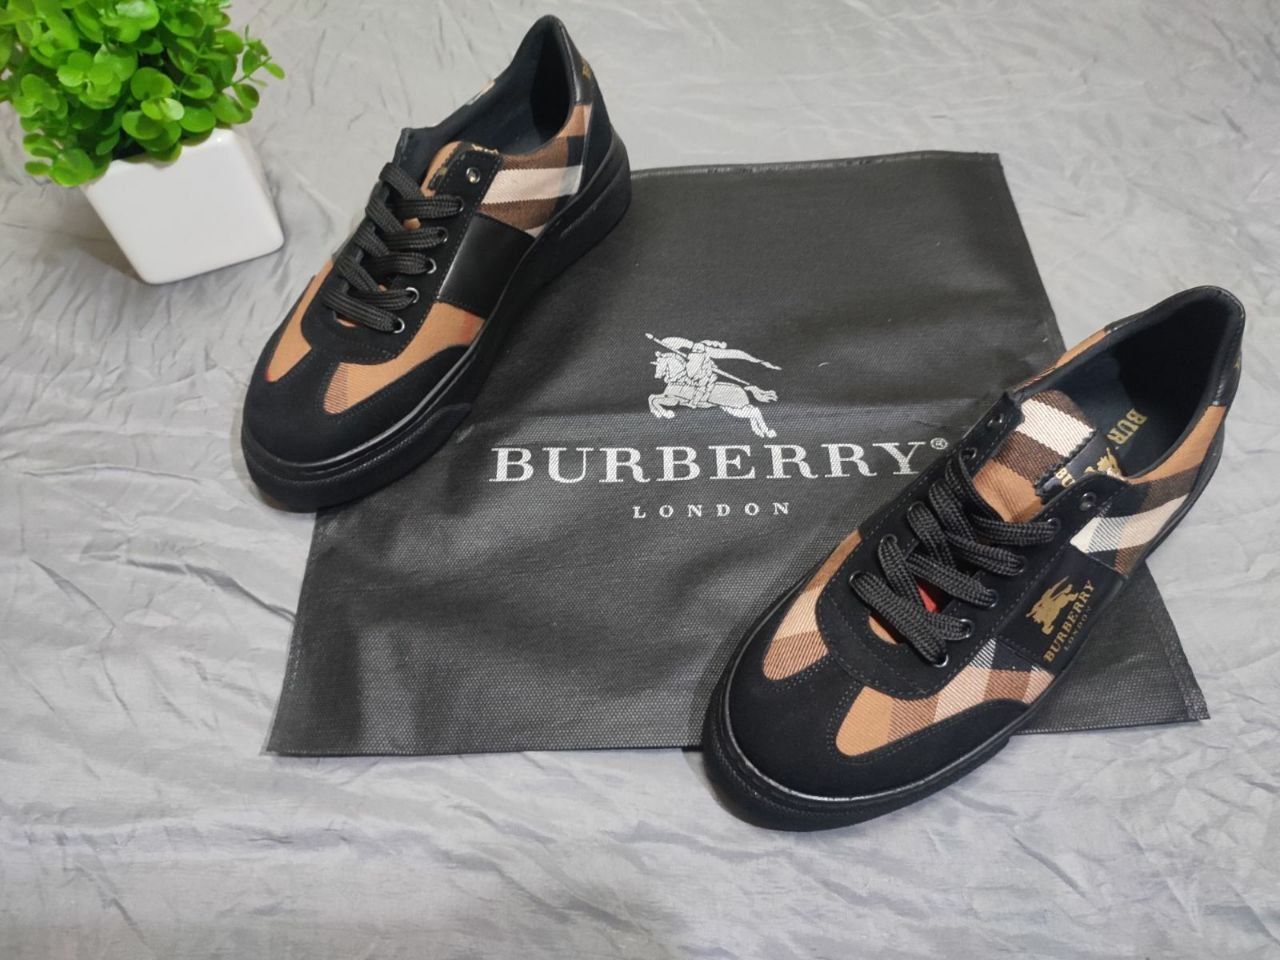 Кросcовки мужские Burberry, стильные весение кросы для прогулок,